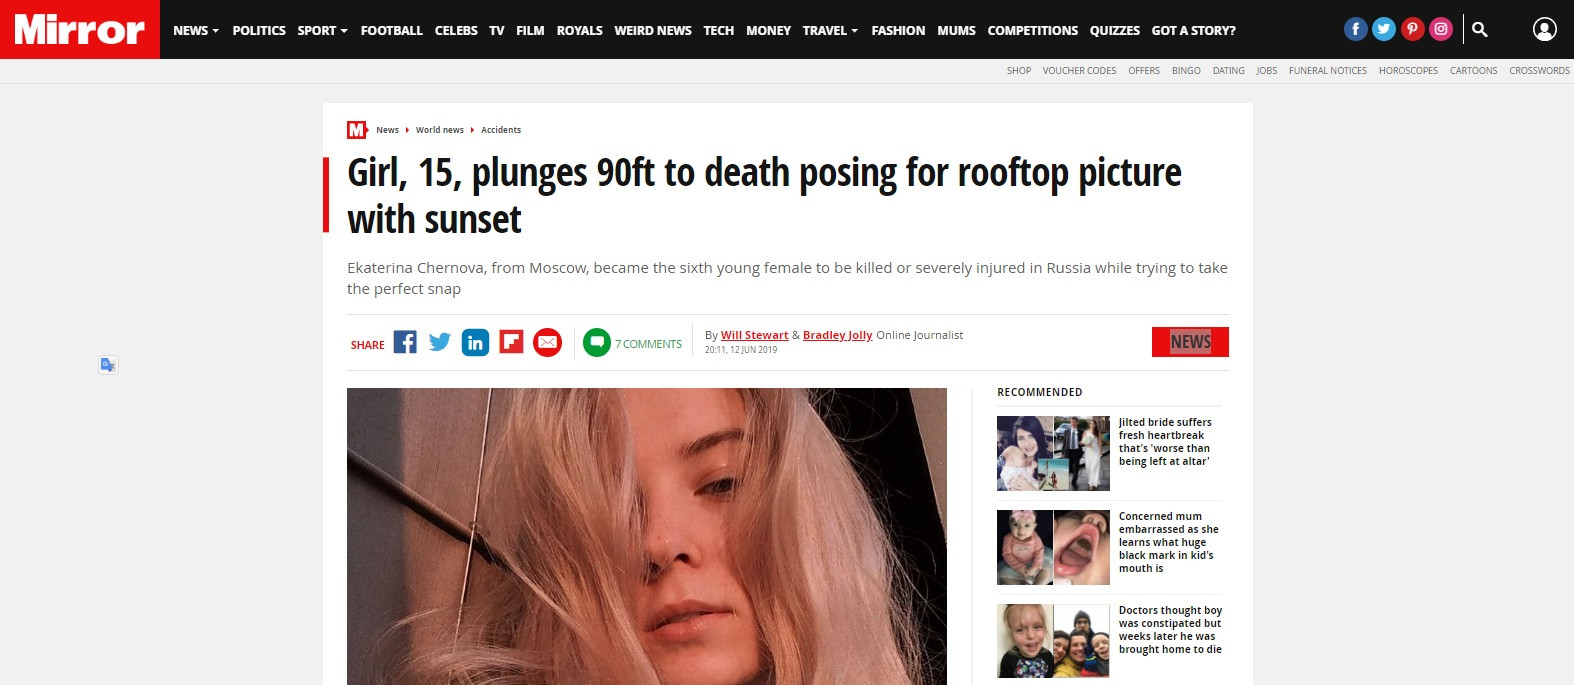 Tạo dáng chụp ảnh từ độ cao 27m, nữ sinh 15 tuổi rơi xuống tử vong